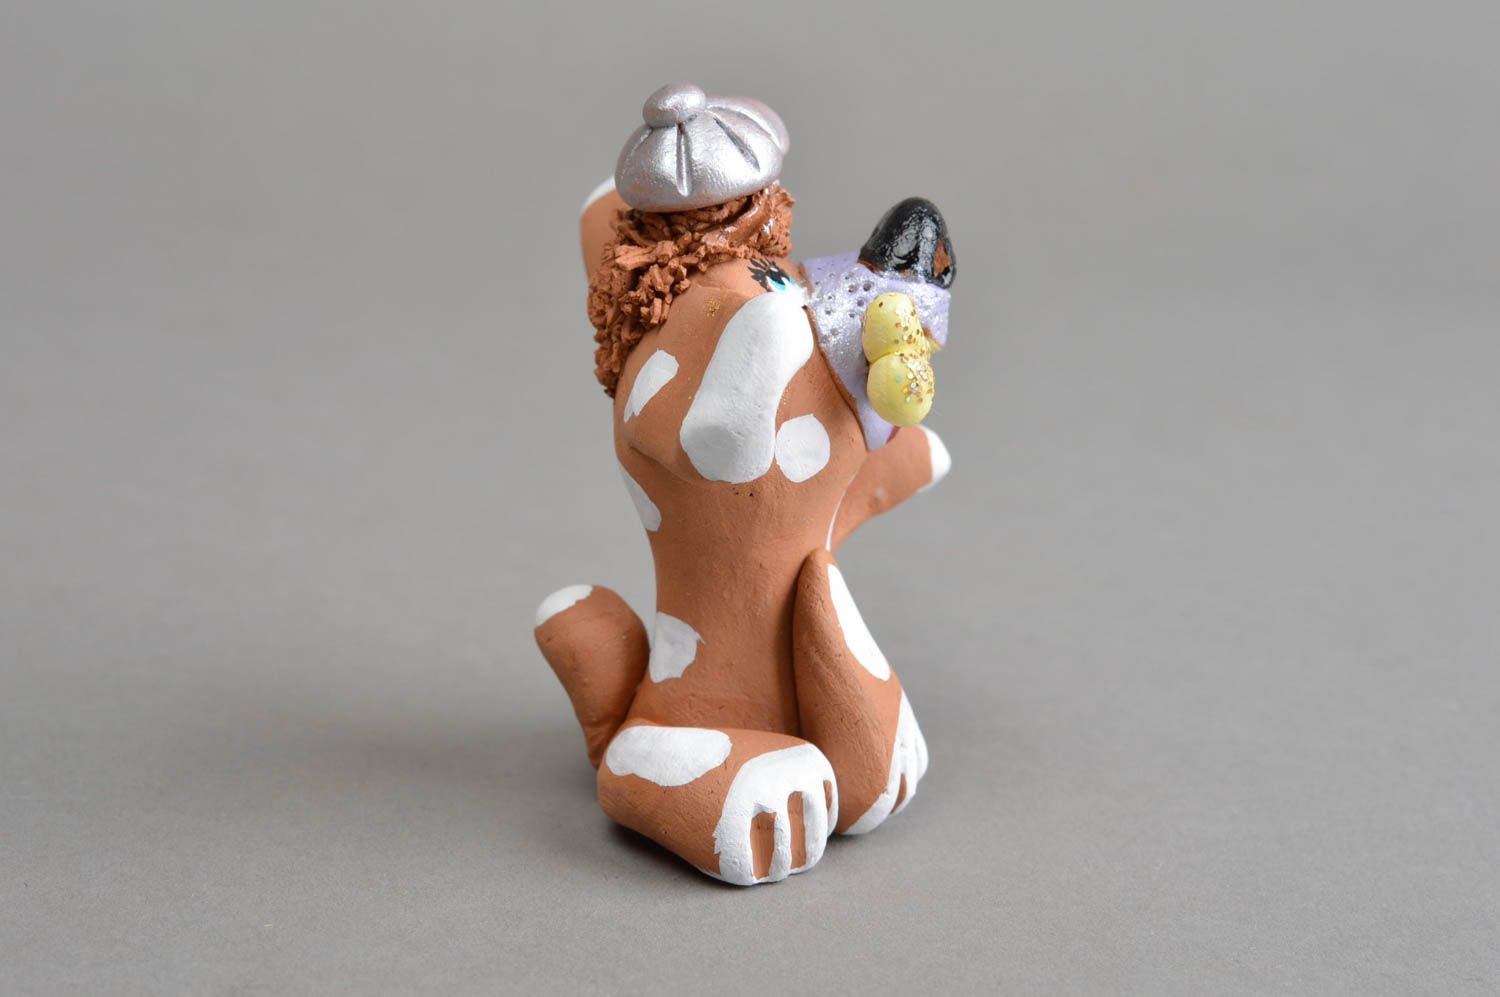 Clay statuette handmade pig figurine decorative ceramic for home decor photo 3